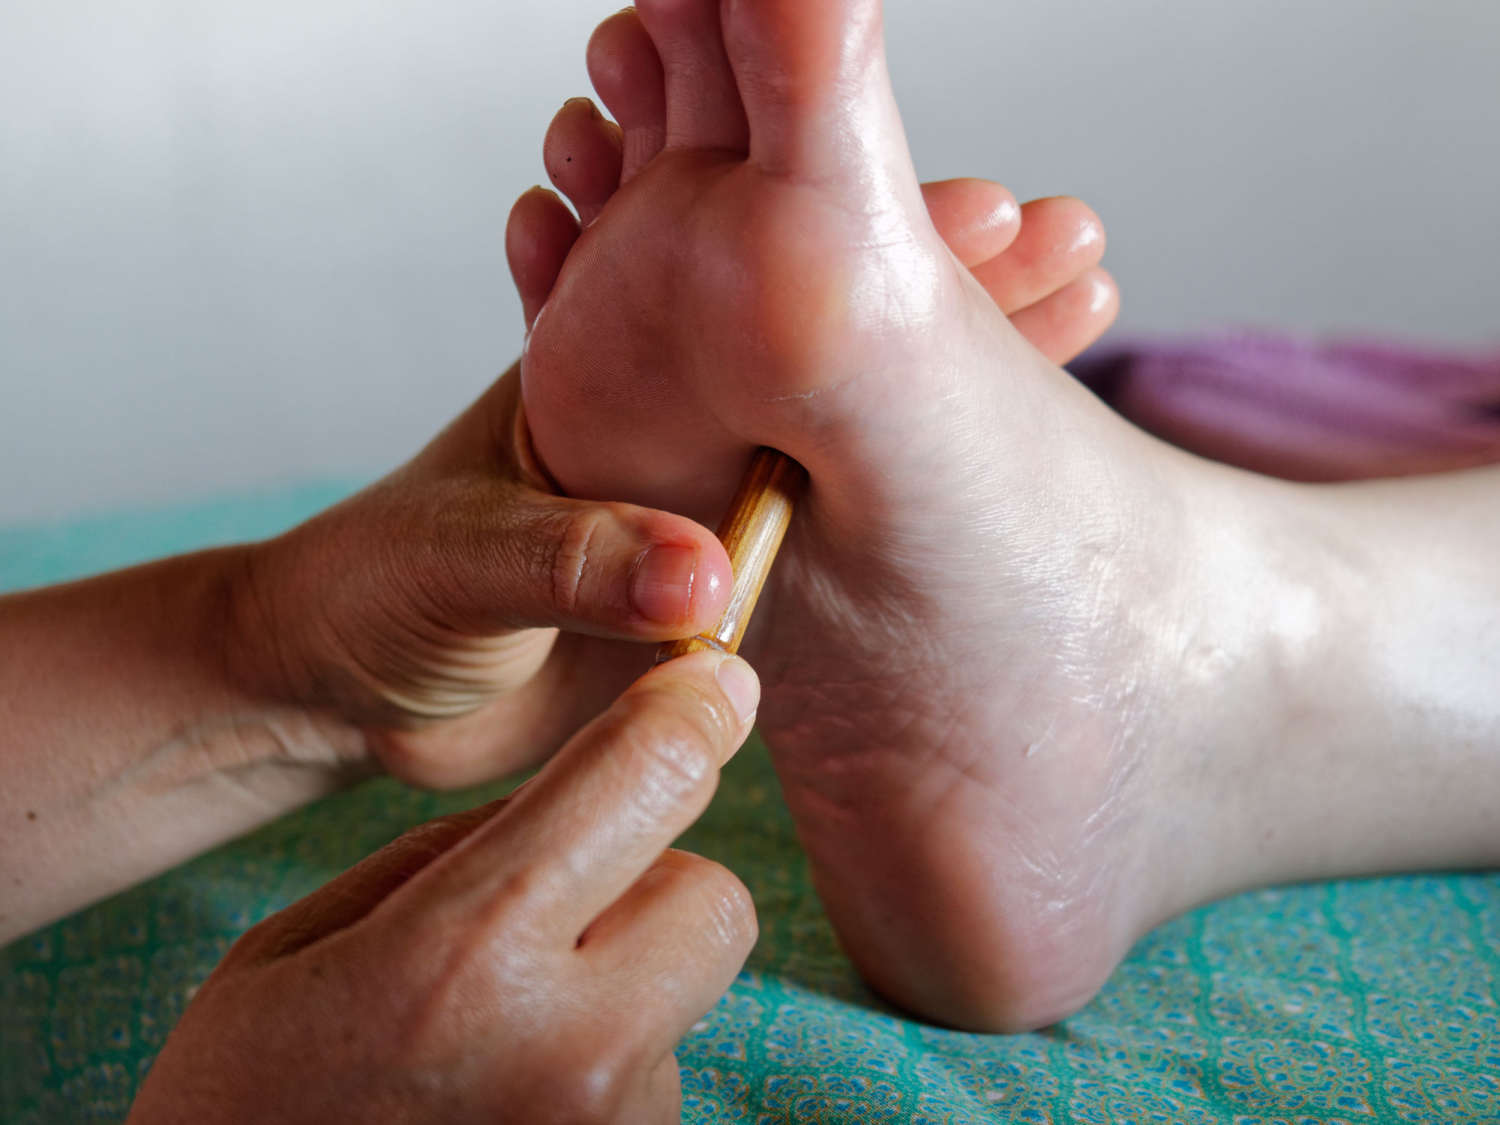 Quoimai Thai Foot Massage